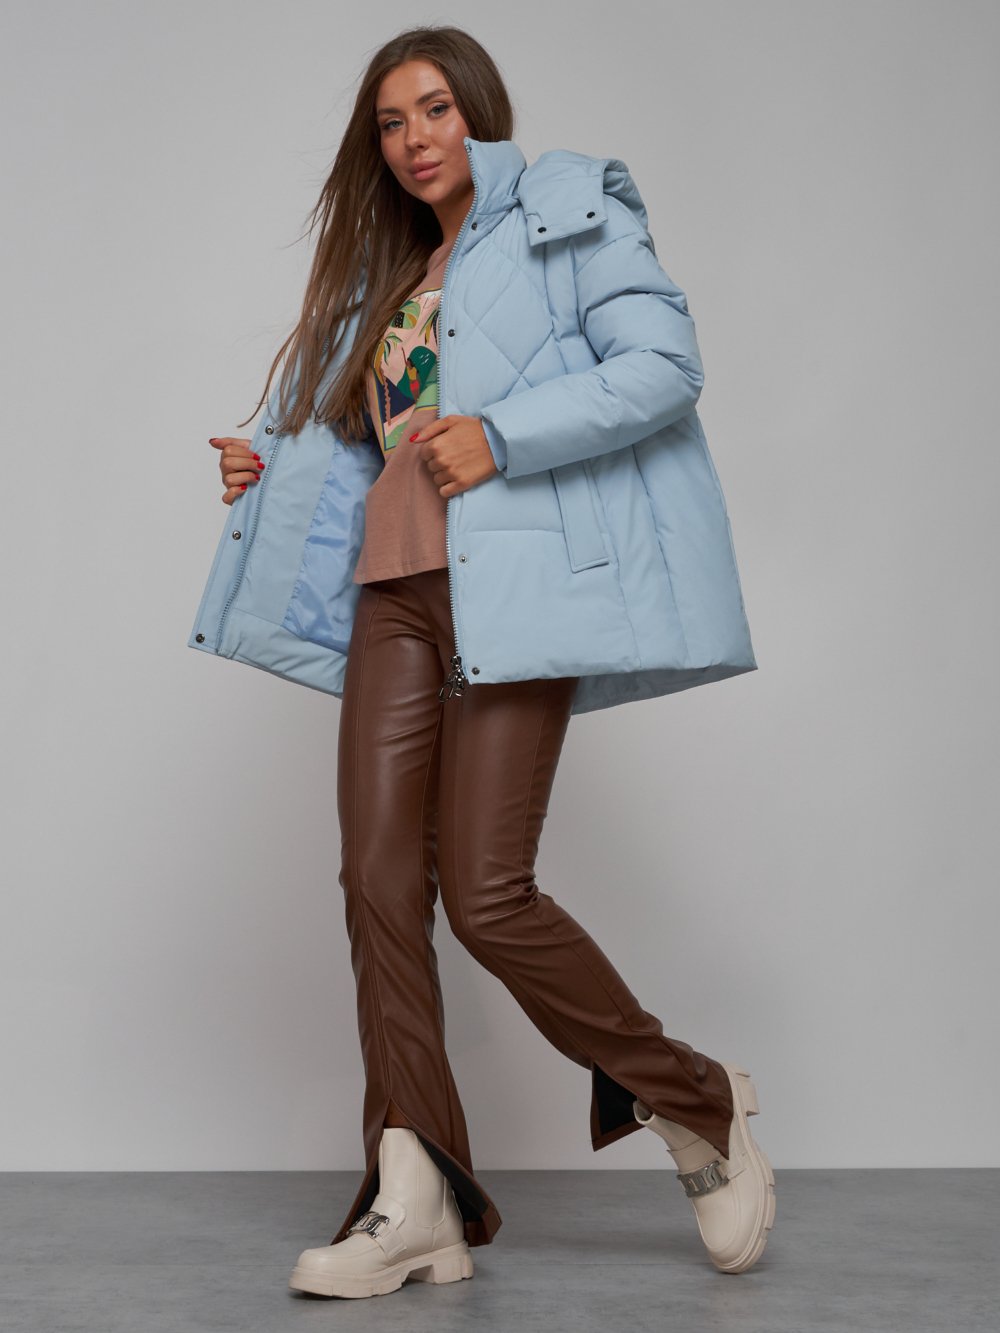 Купить куртку зимнюю оптом от производителя недорого в Москве 52302Gl 1